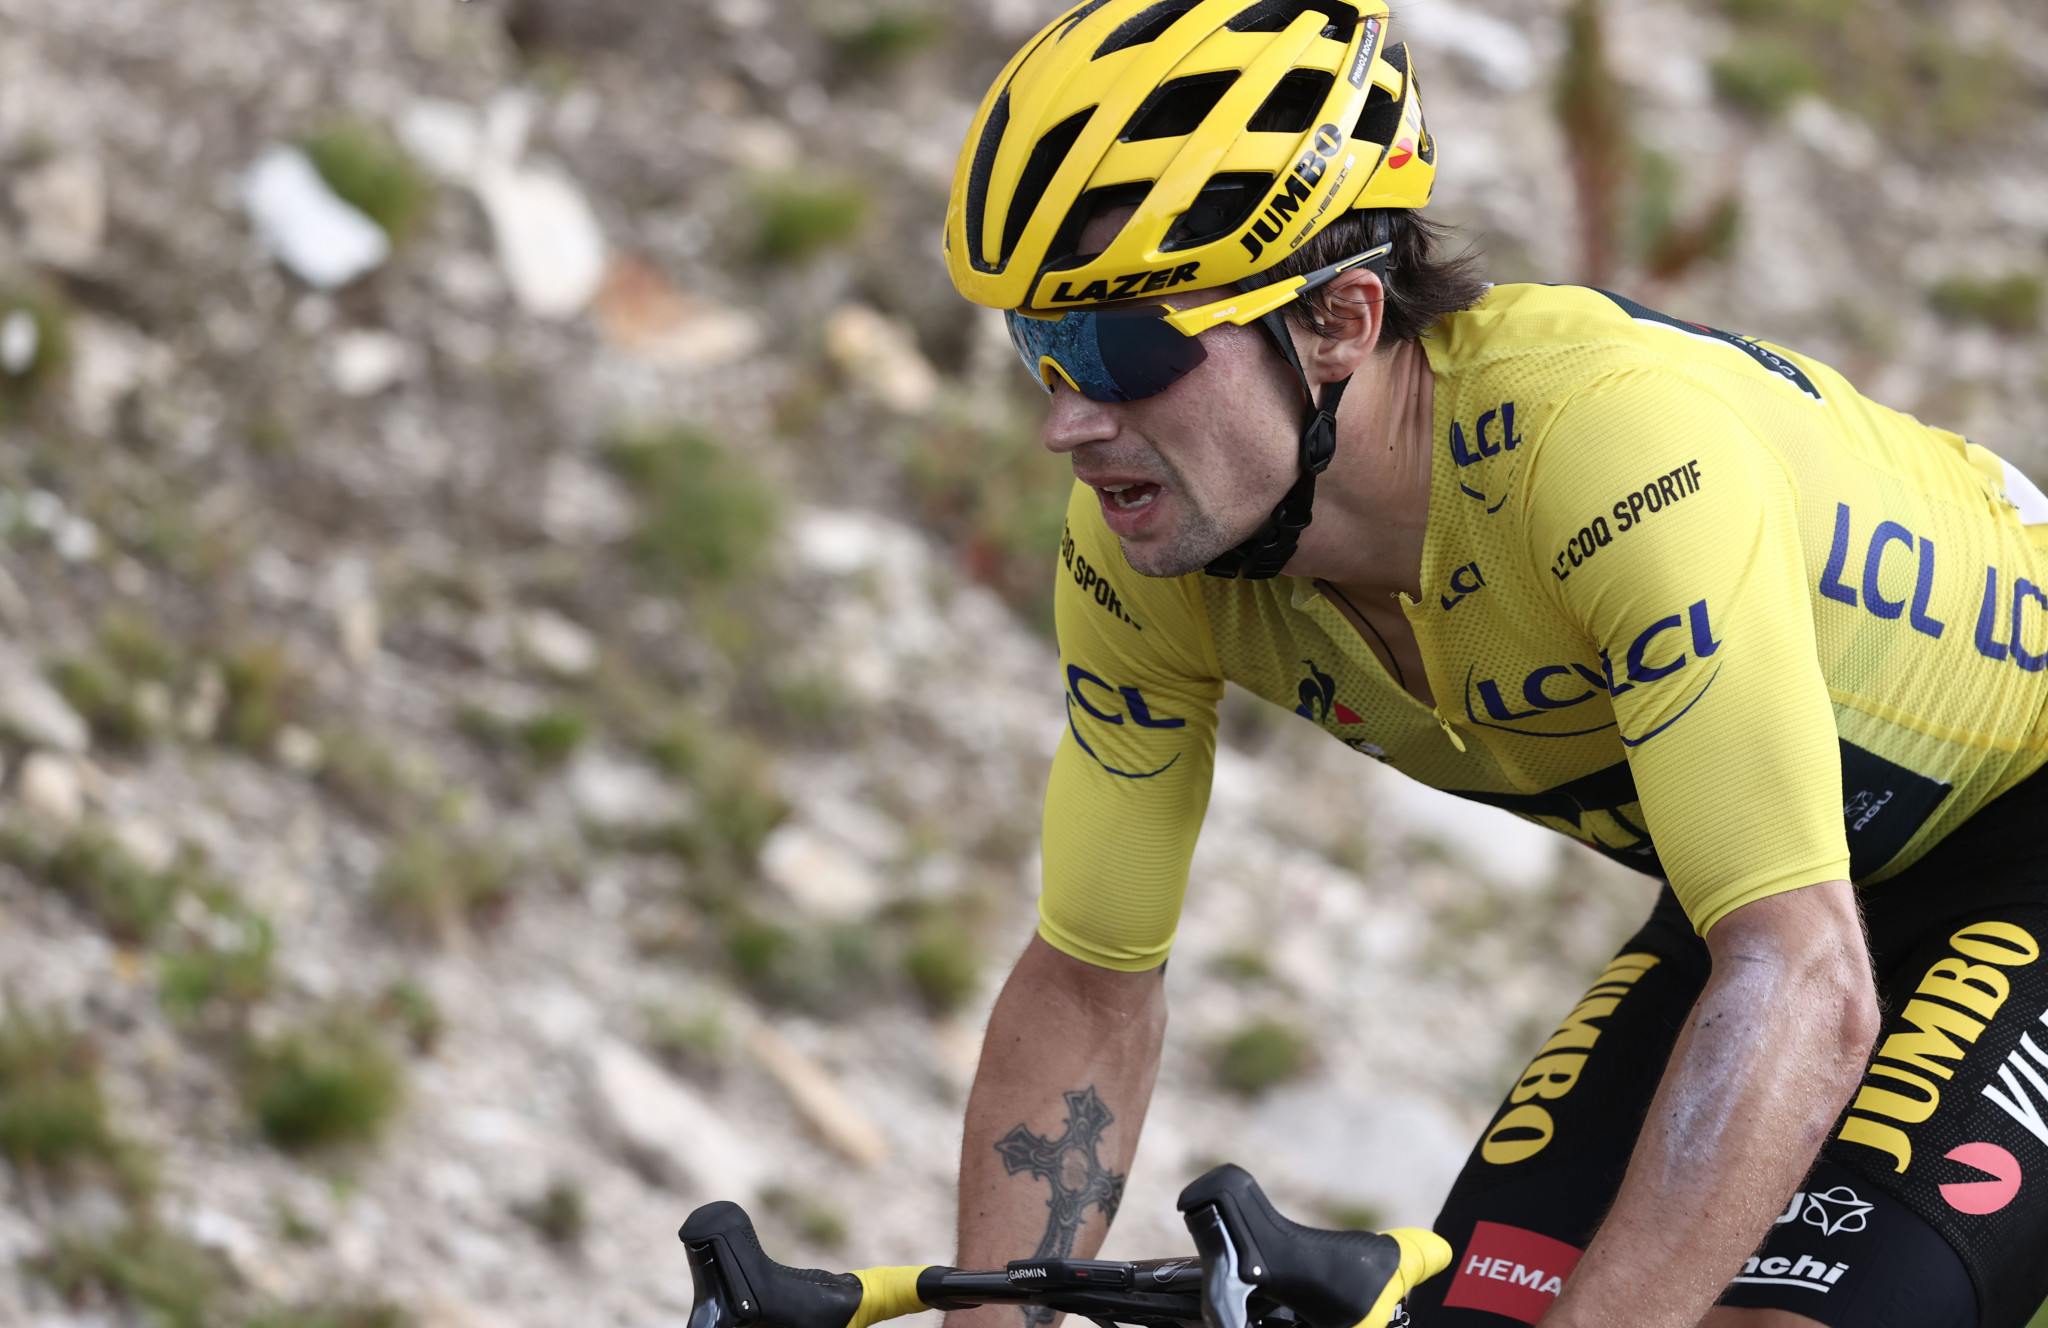 Primož Roglič has extended his Tour de France lead ©Getty Images